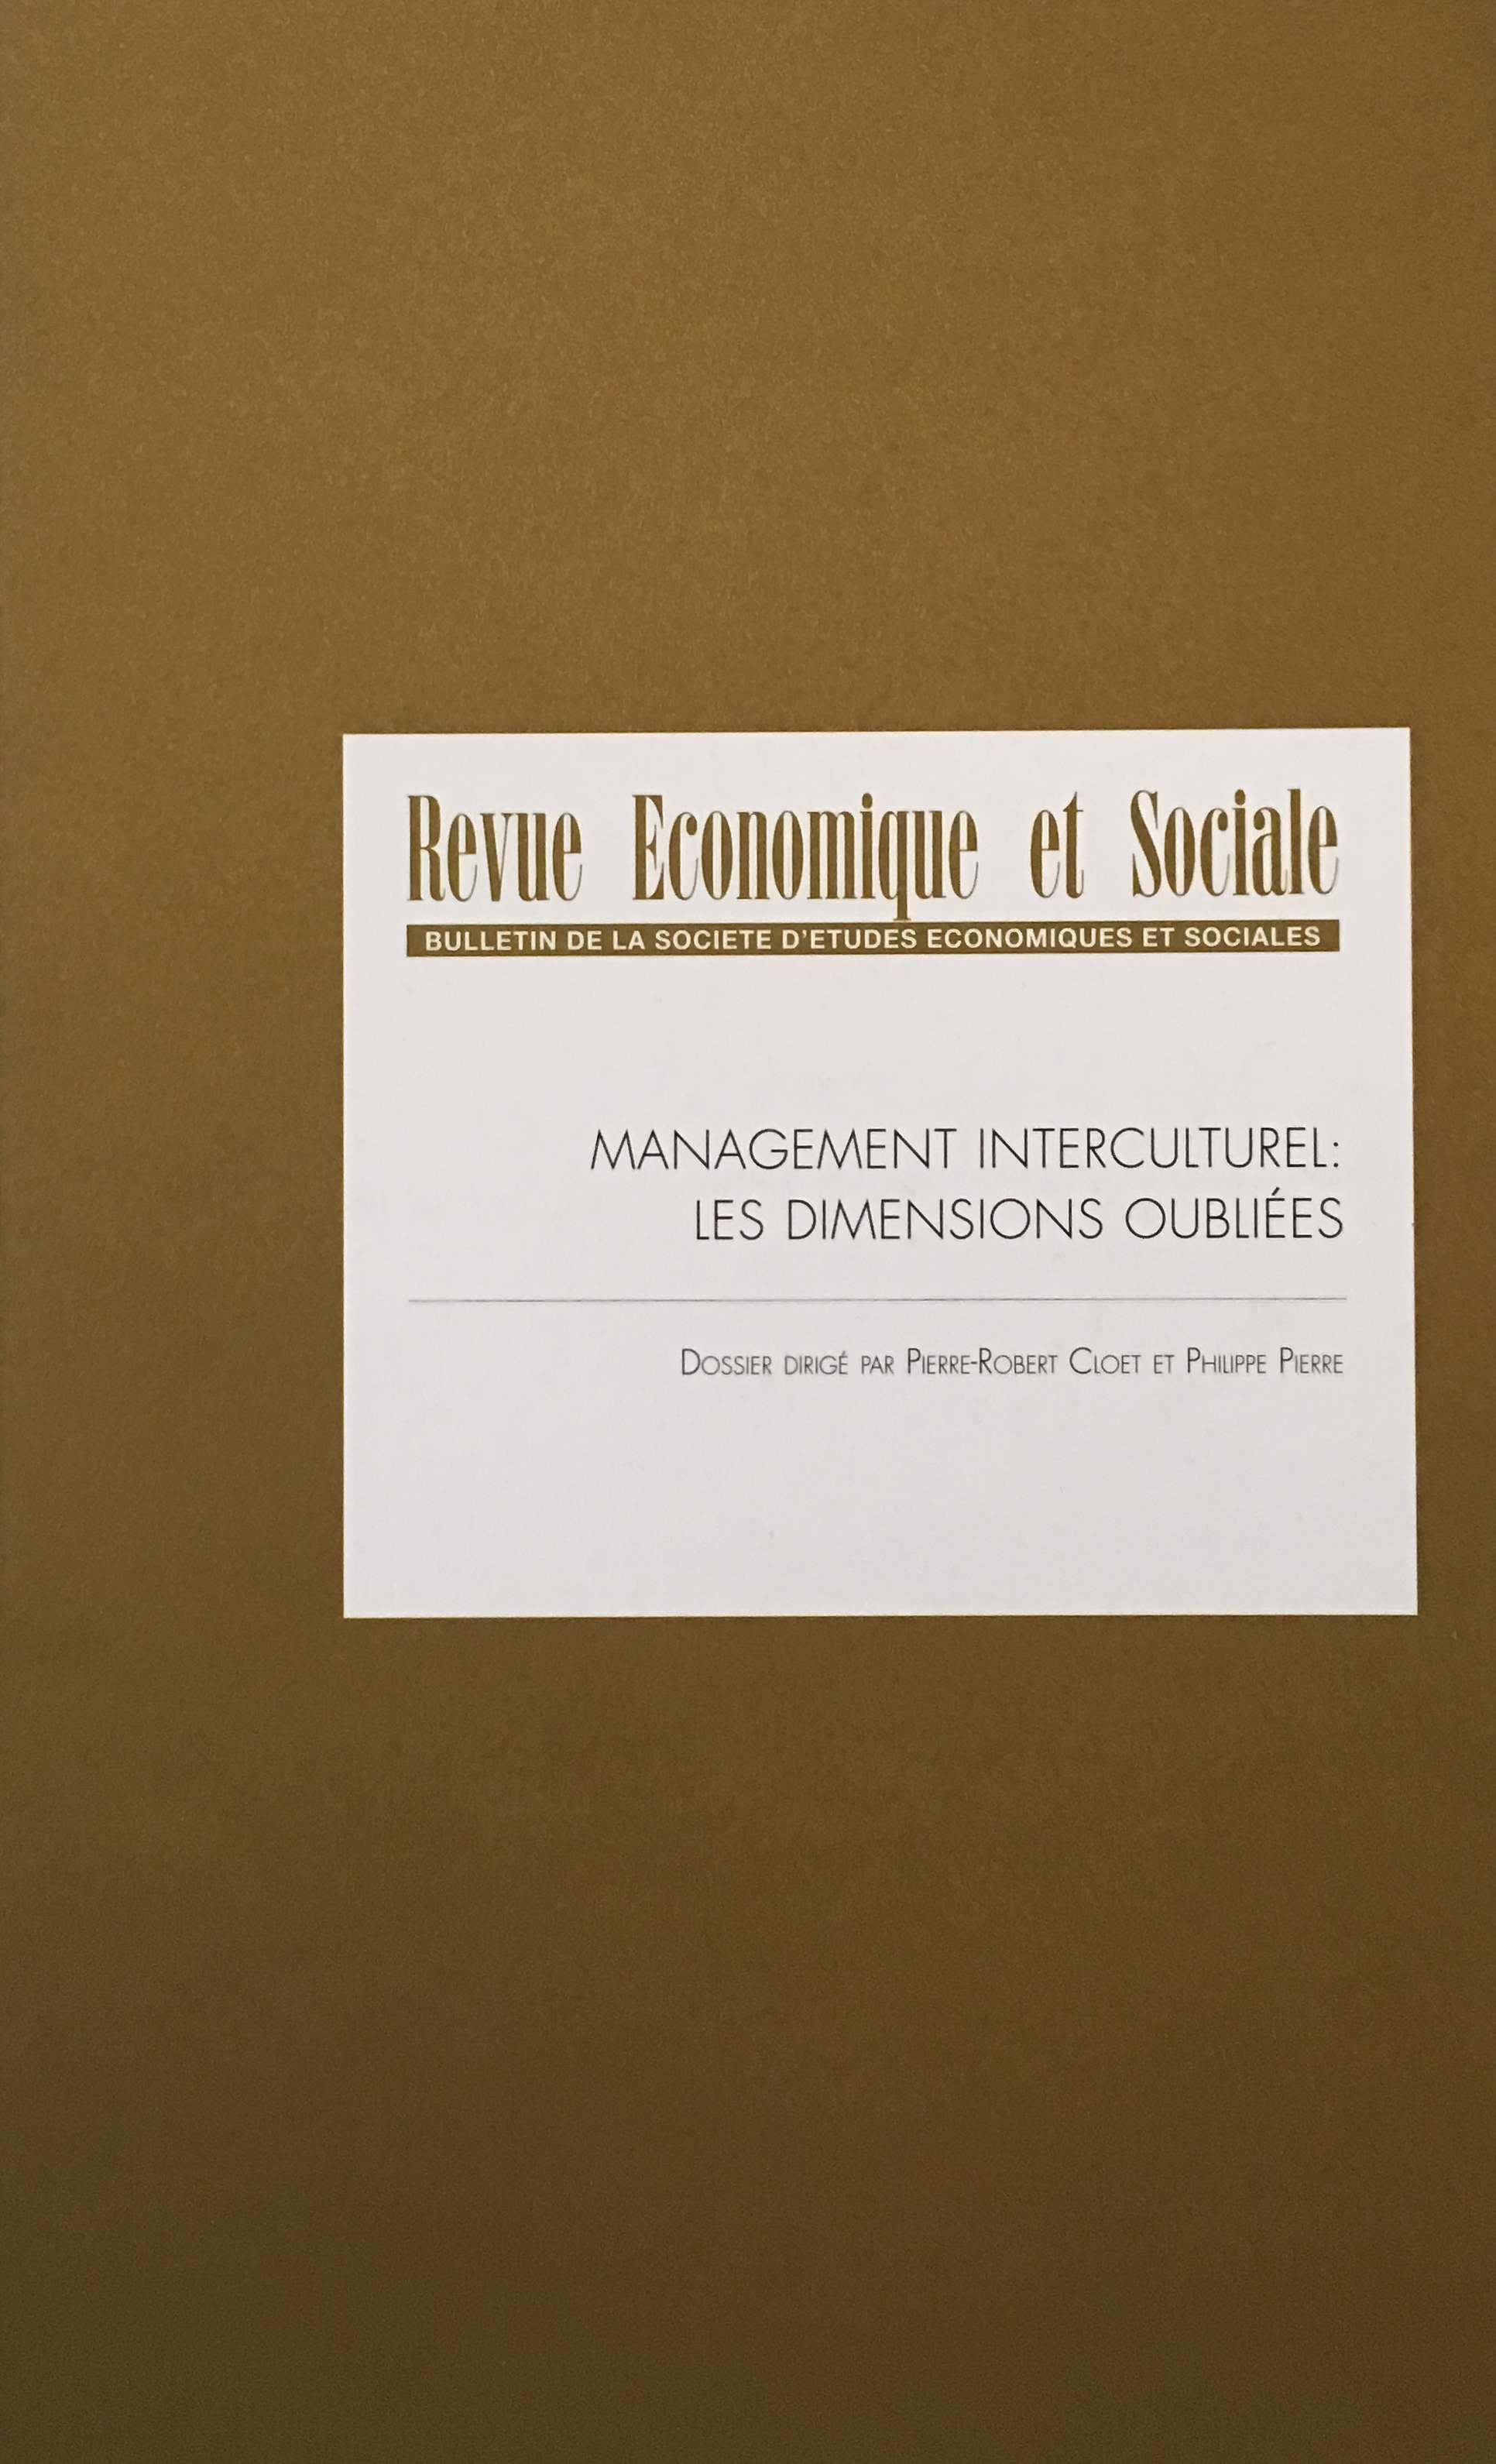 Revue Economique et Sociale numéro 75 1ère de couverture